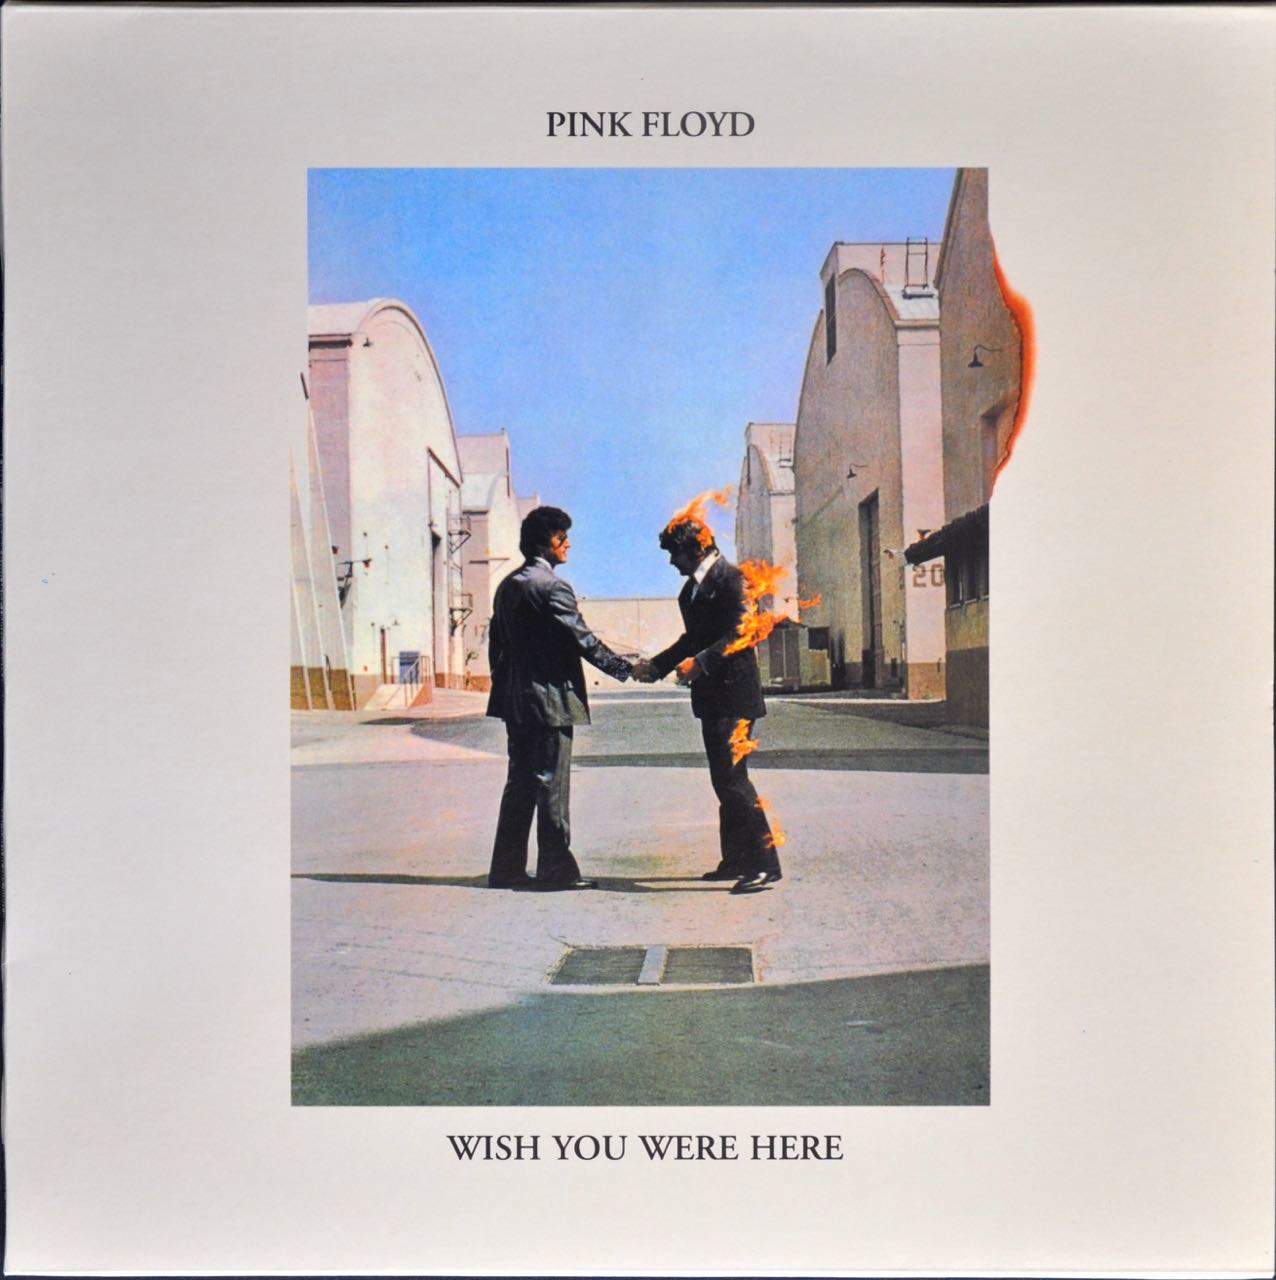 Disco Pink Floyd  Vinyl record art, Pink floyd art, Painted vinyl records